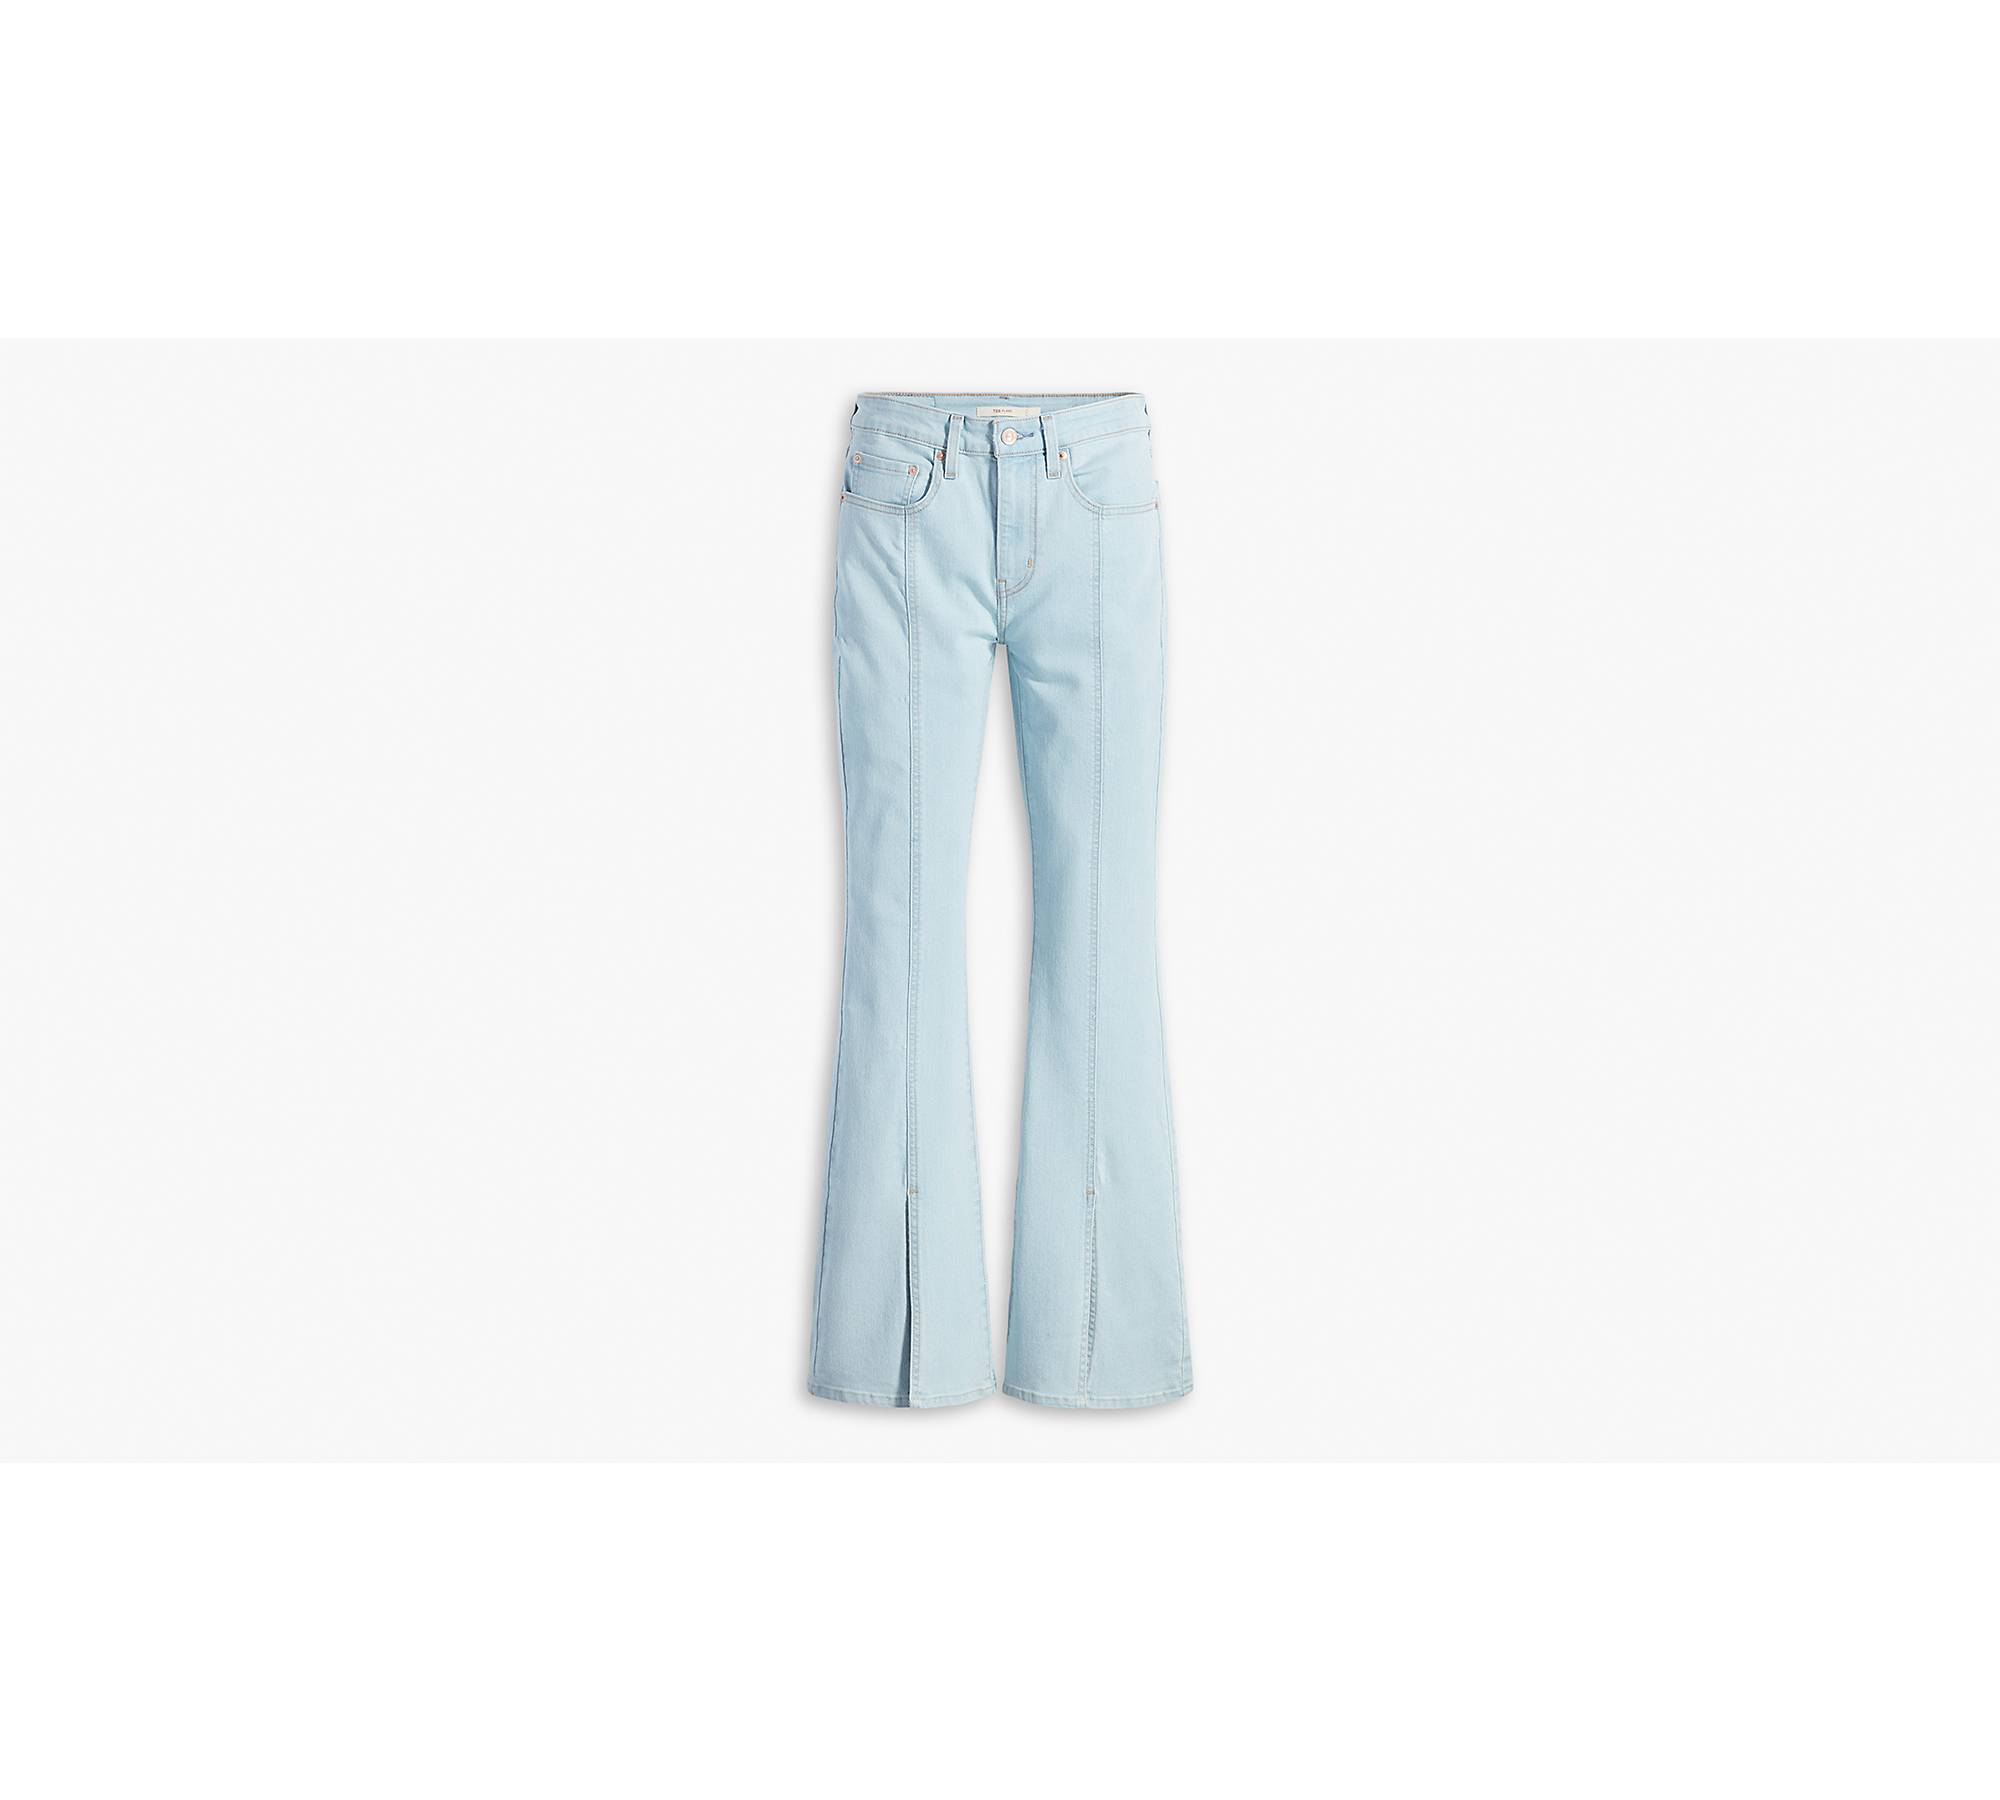 Ladies Stretch Jeans - Navy - 6 - 26 - Daisy's Closet – Daisy's Closet